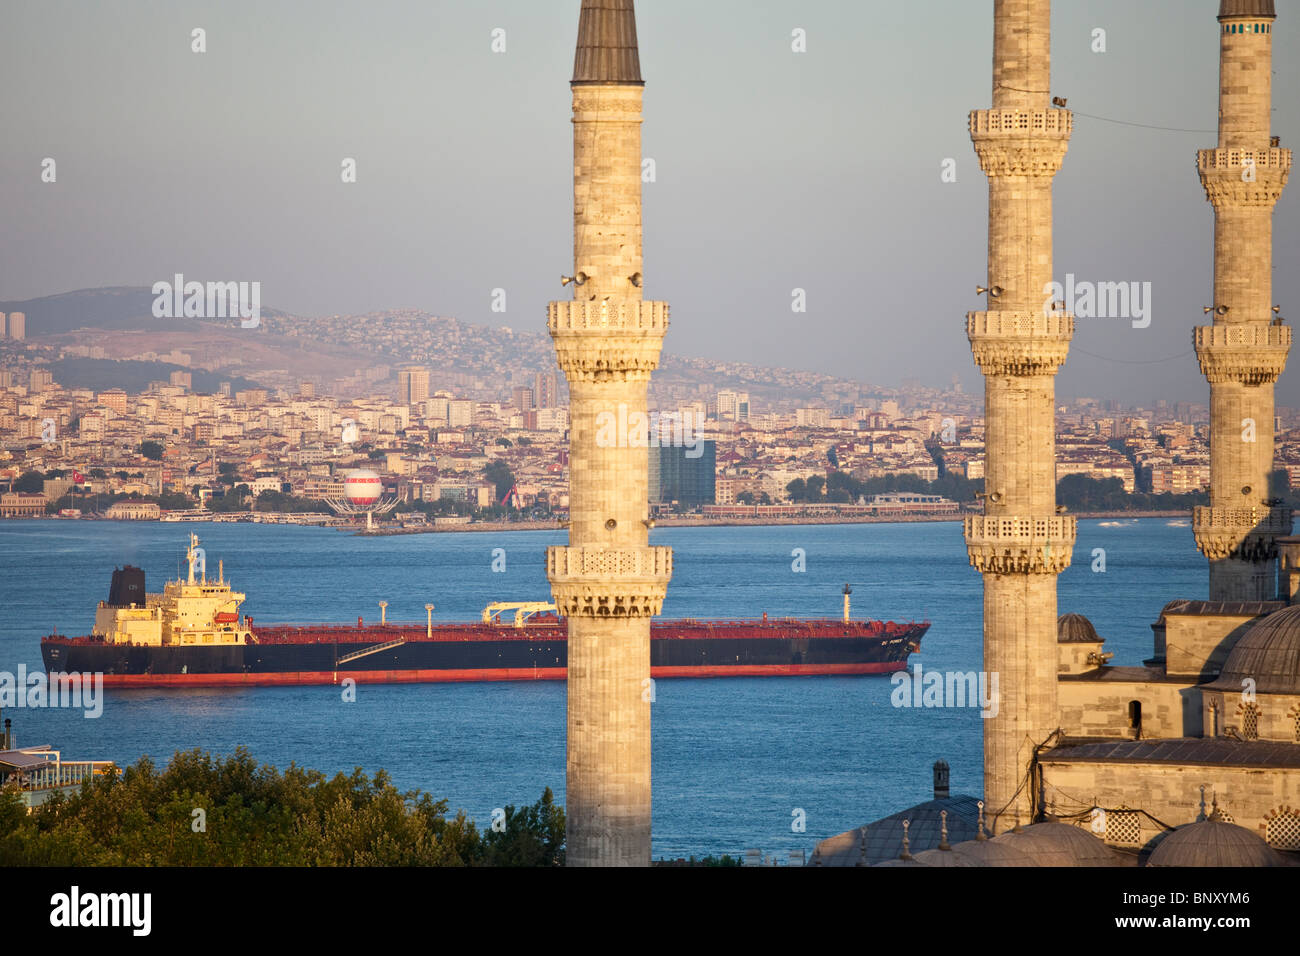 Tanker und Sultan Ahmed oder die blaue Moschee in Istatnbul, Türkei Stockfoto